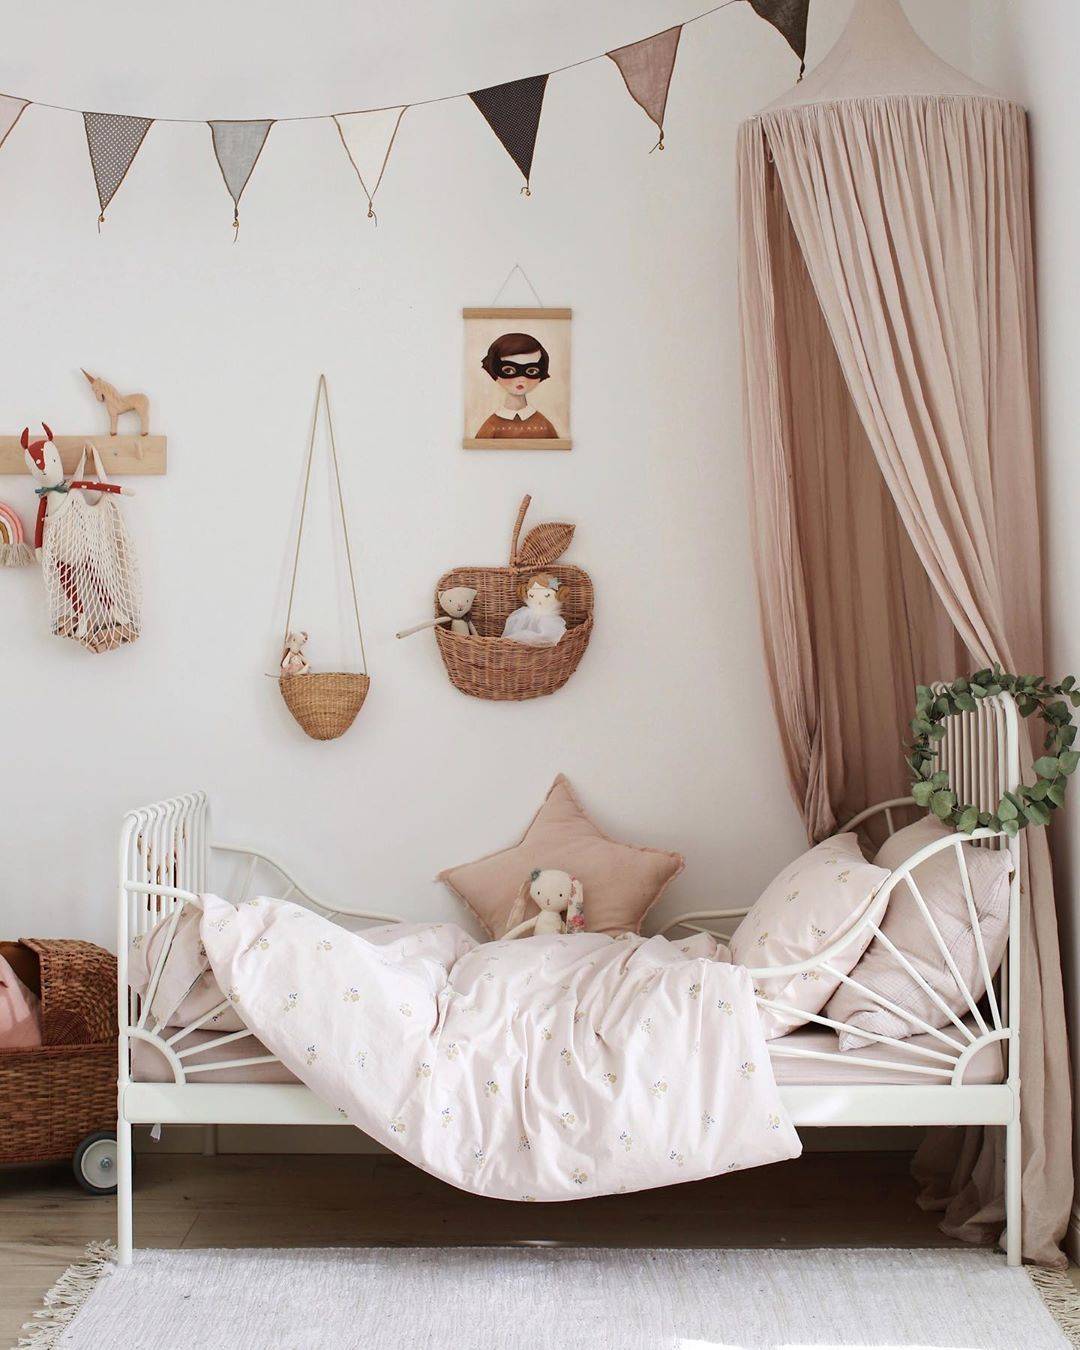 Habitación infantil con cama MINNEN de IKEA en color blanco y dosel rosa